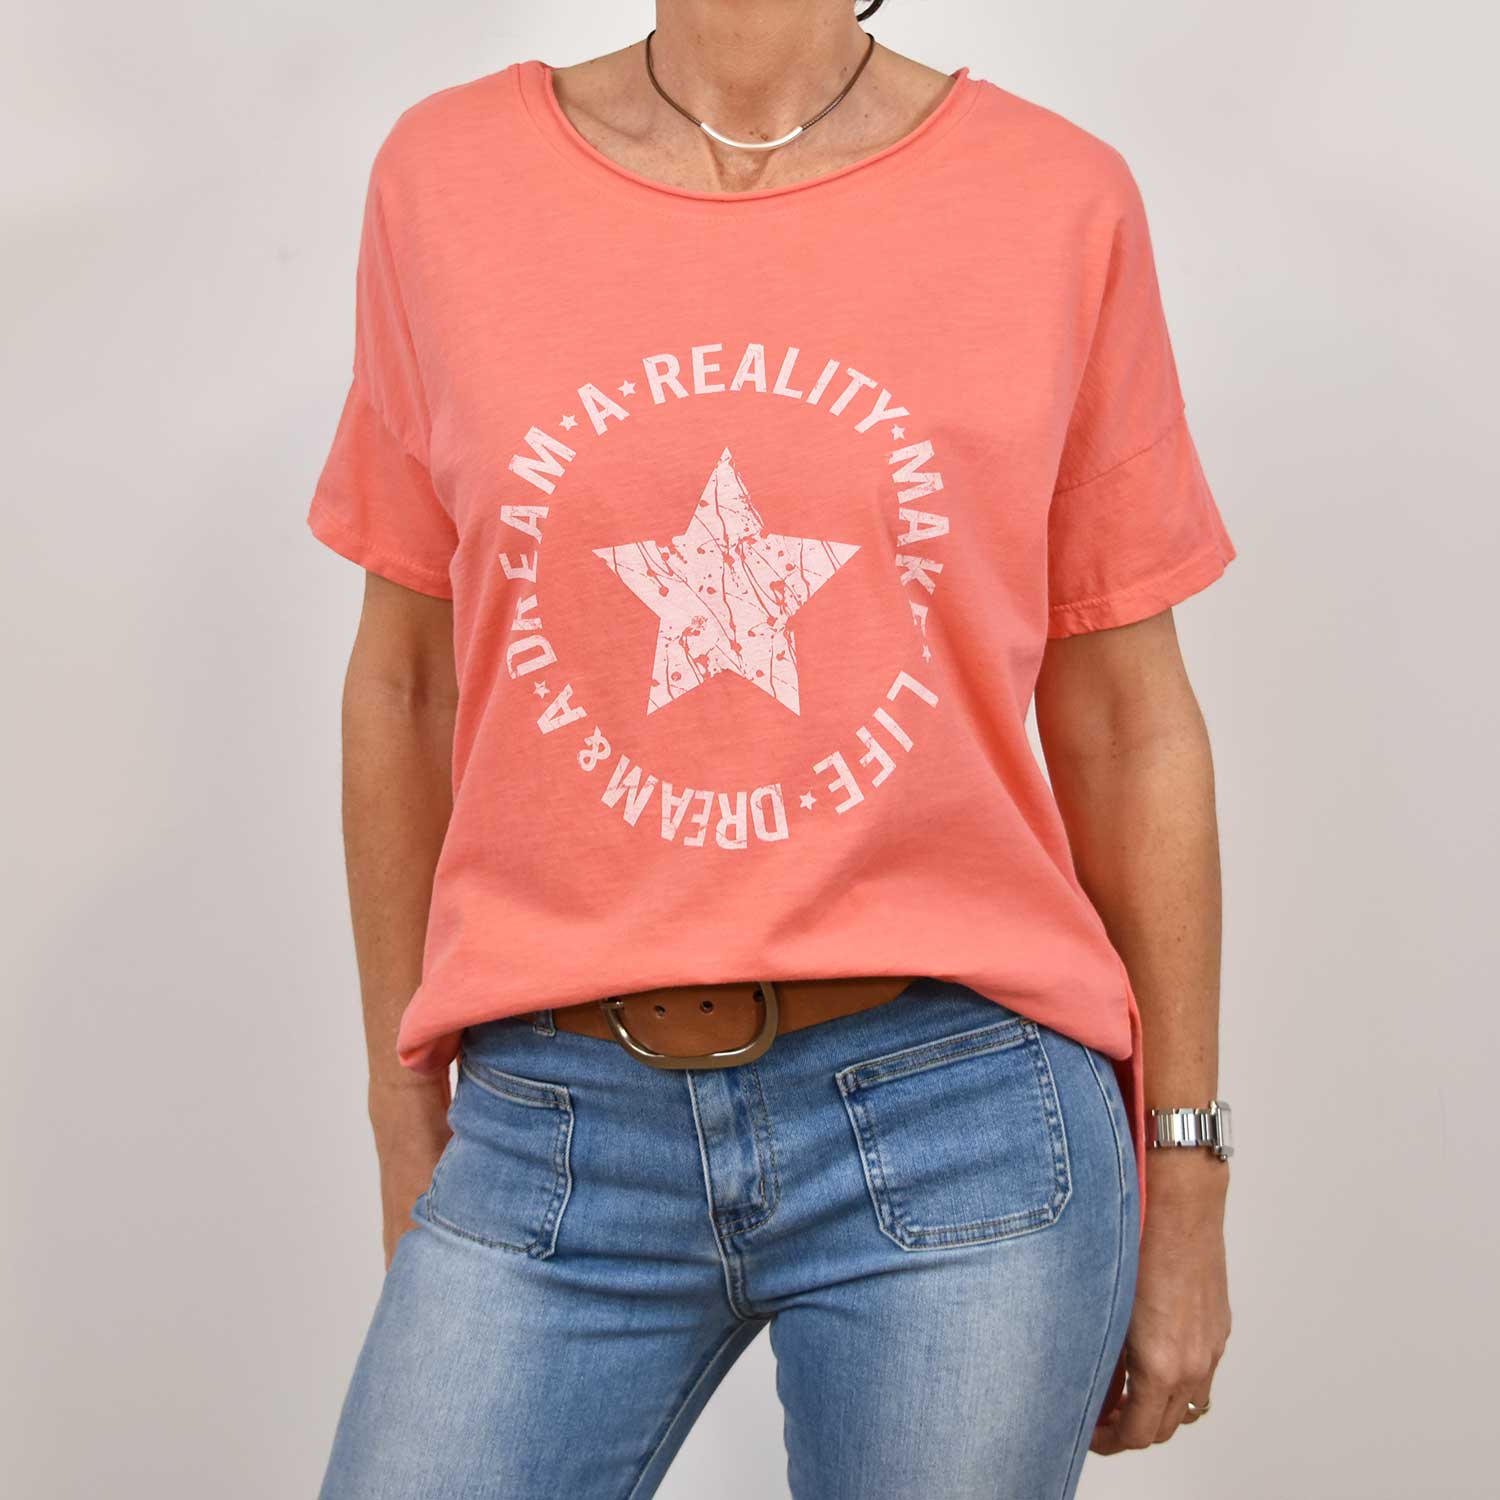 Camiseta estrella 'Dream' coral